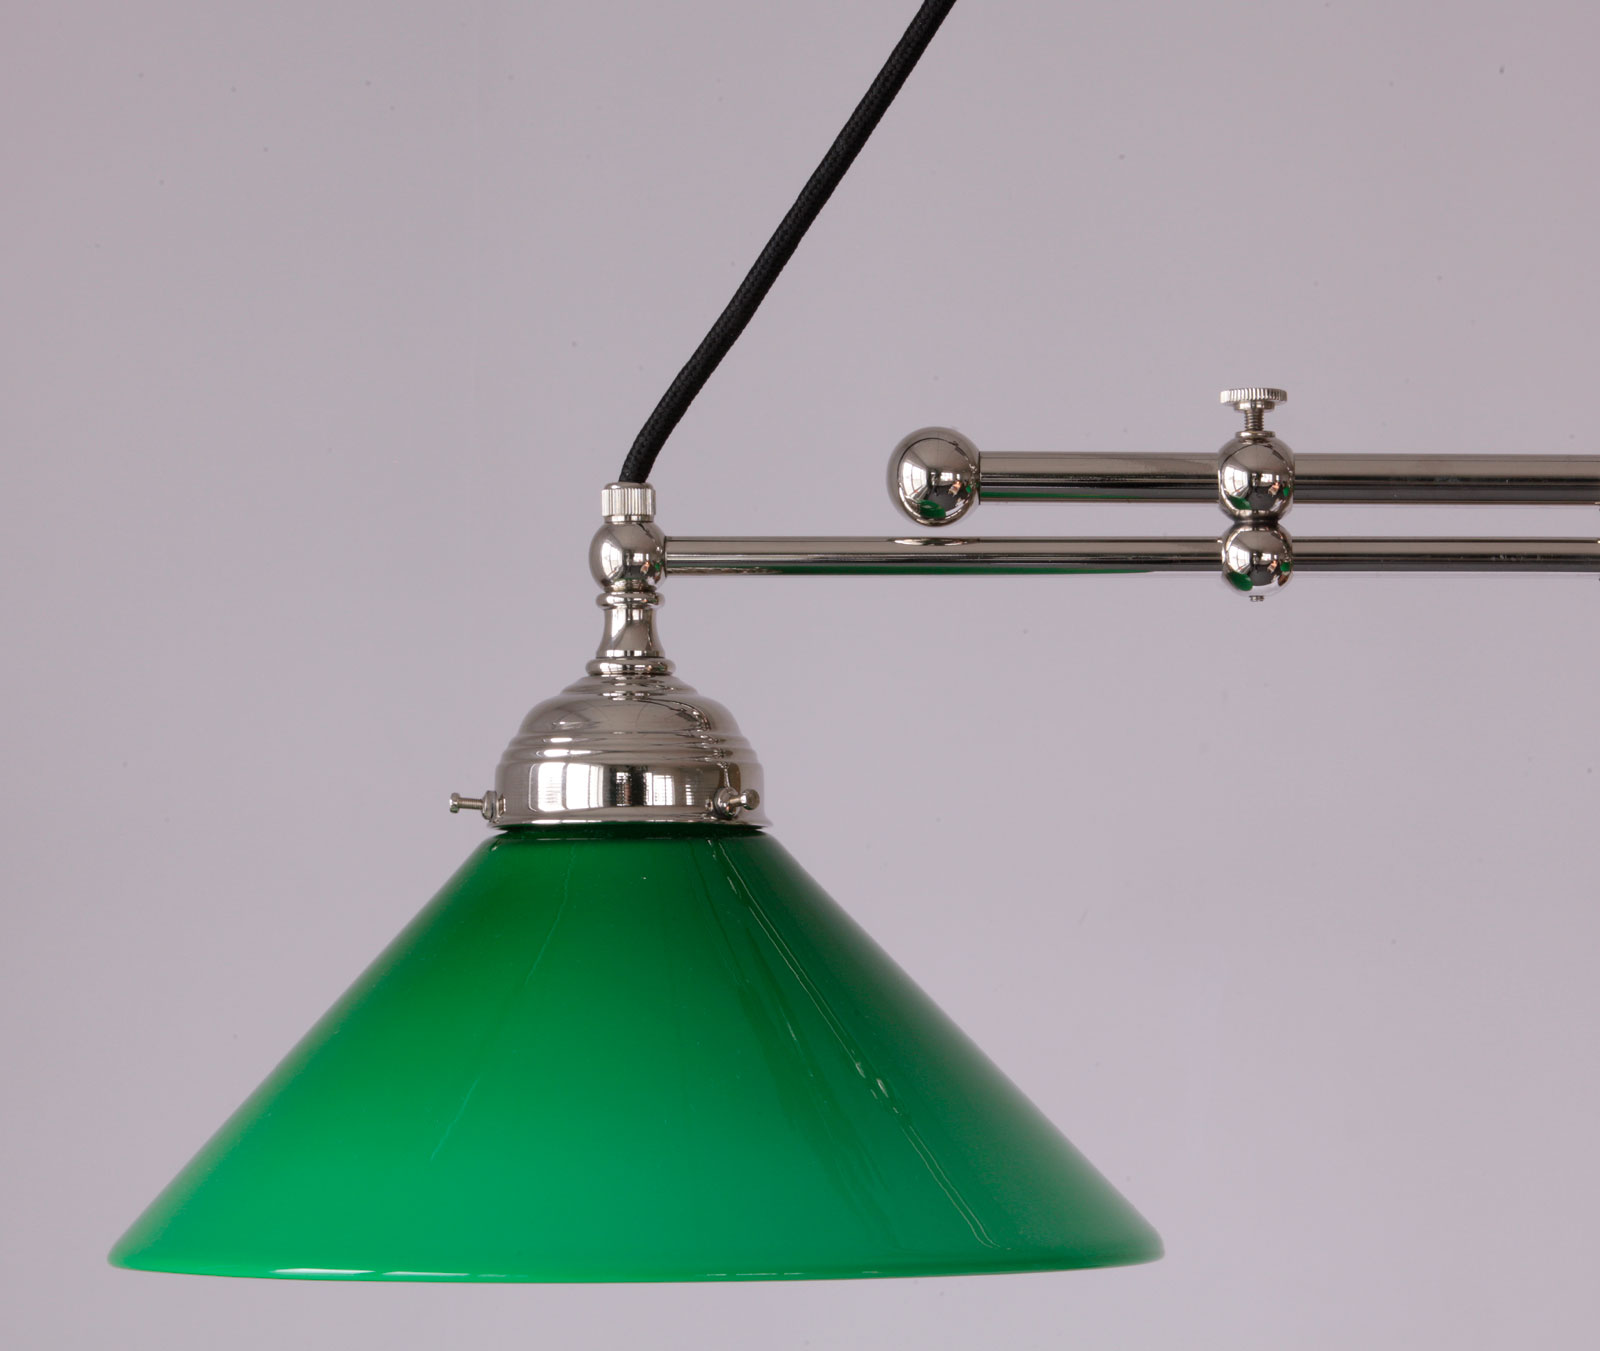 Trapez-Hängeleuchte aus Messing, einstellbare Breite, Kegel-Glasschirme: Messing glänzend vernickelt, grüner Schirm